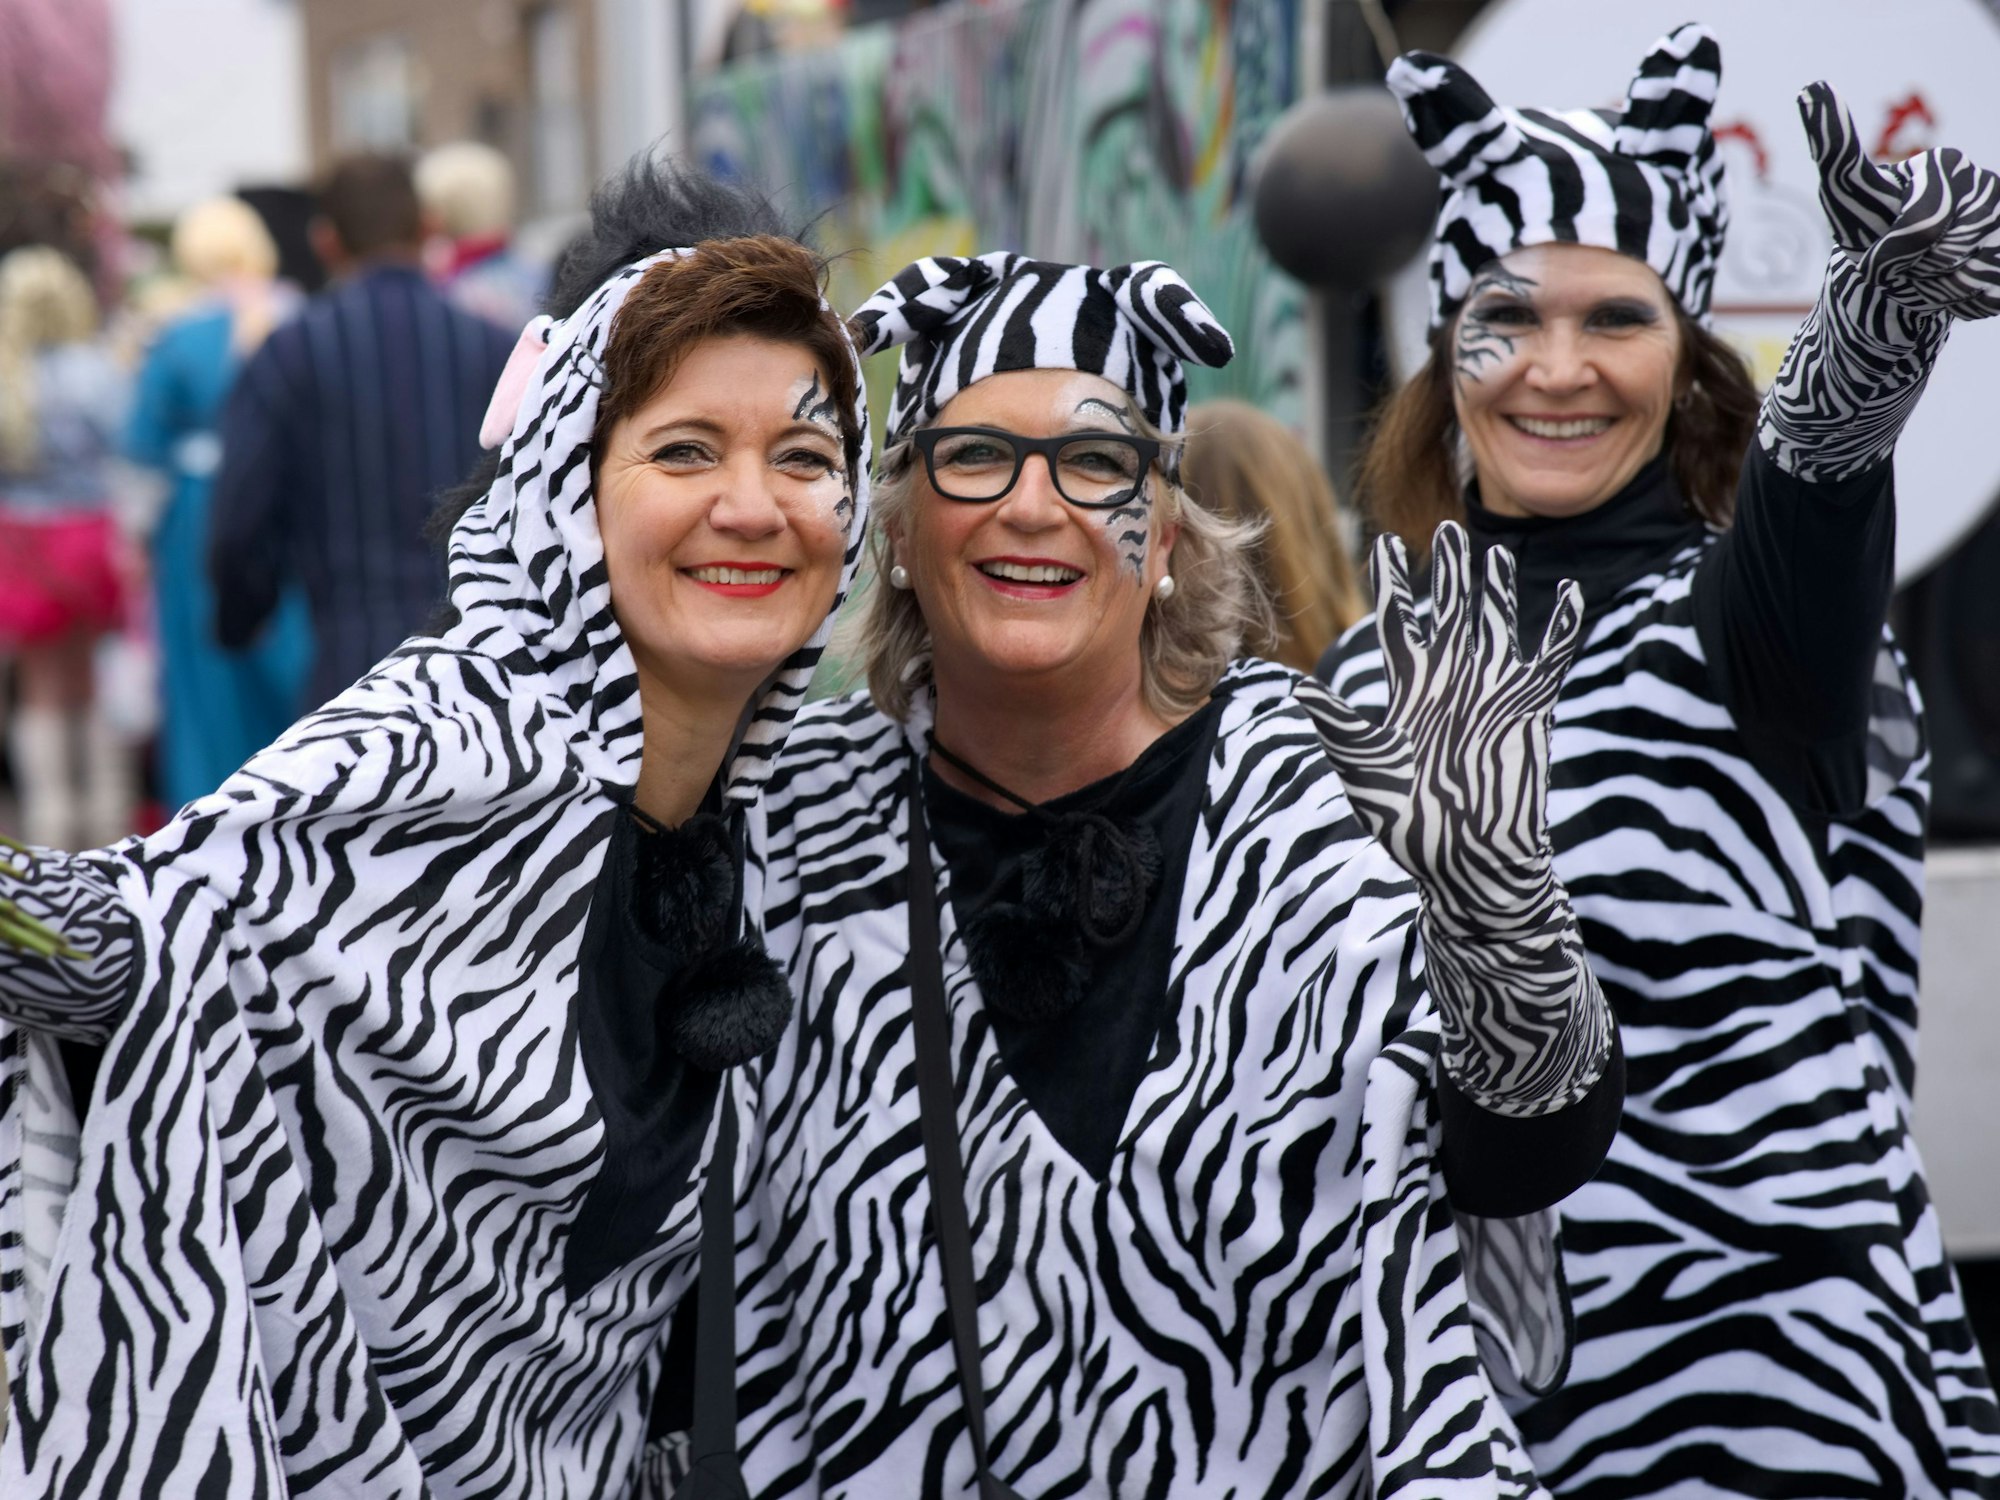 Die Frauengruppe „Klotze“ war in diesem Jahr in Zebrakostümen und Wagen im Zug dabei. Mit karnevalistischer Herzlichkeit überreichten sie ihre Blümchen.